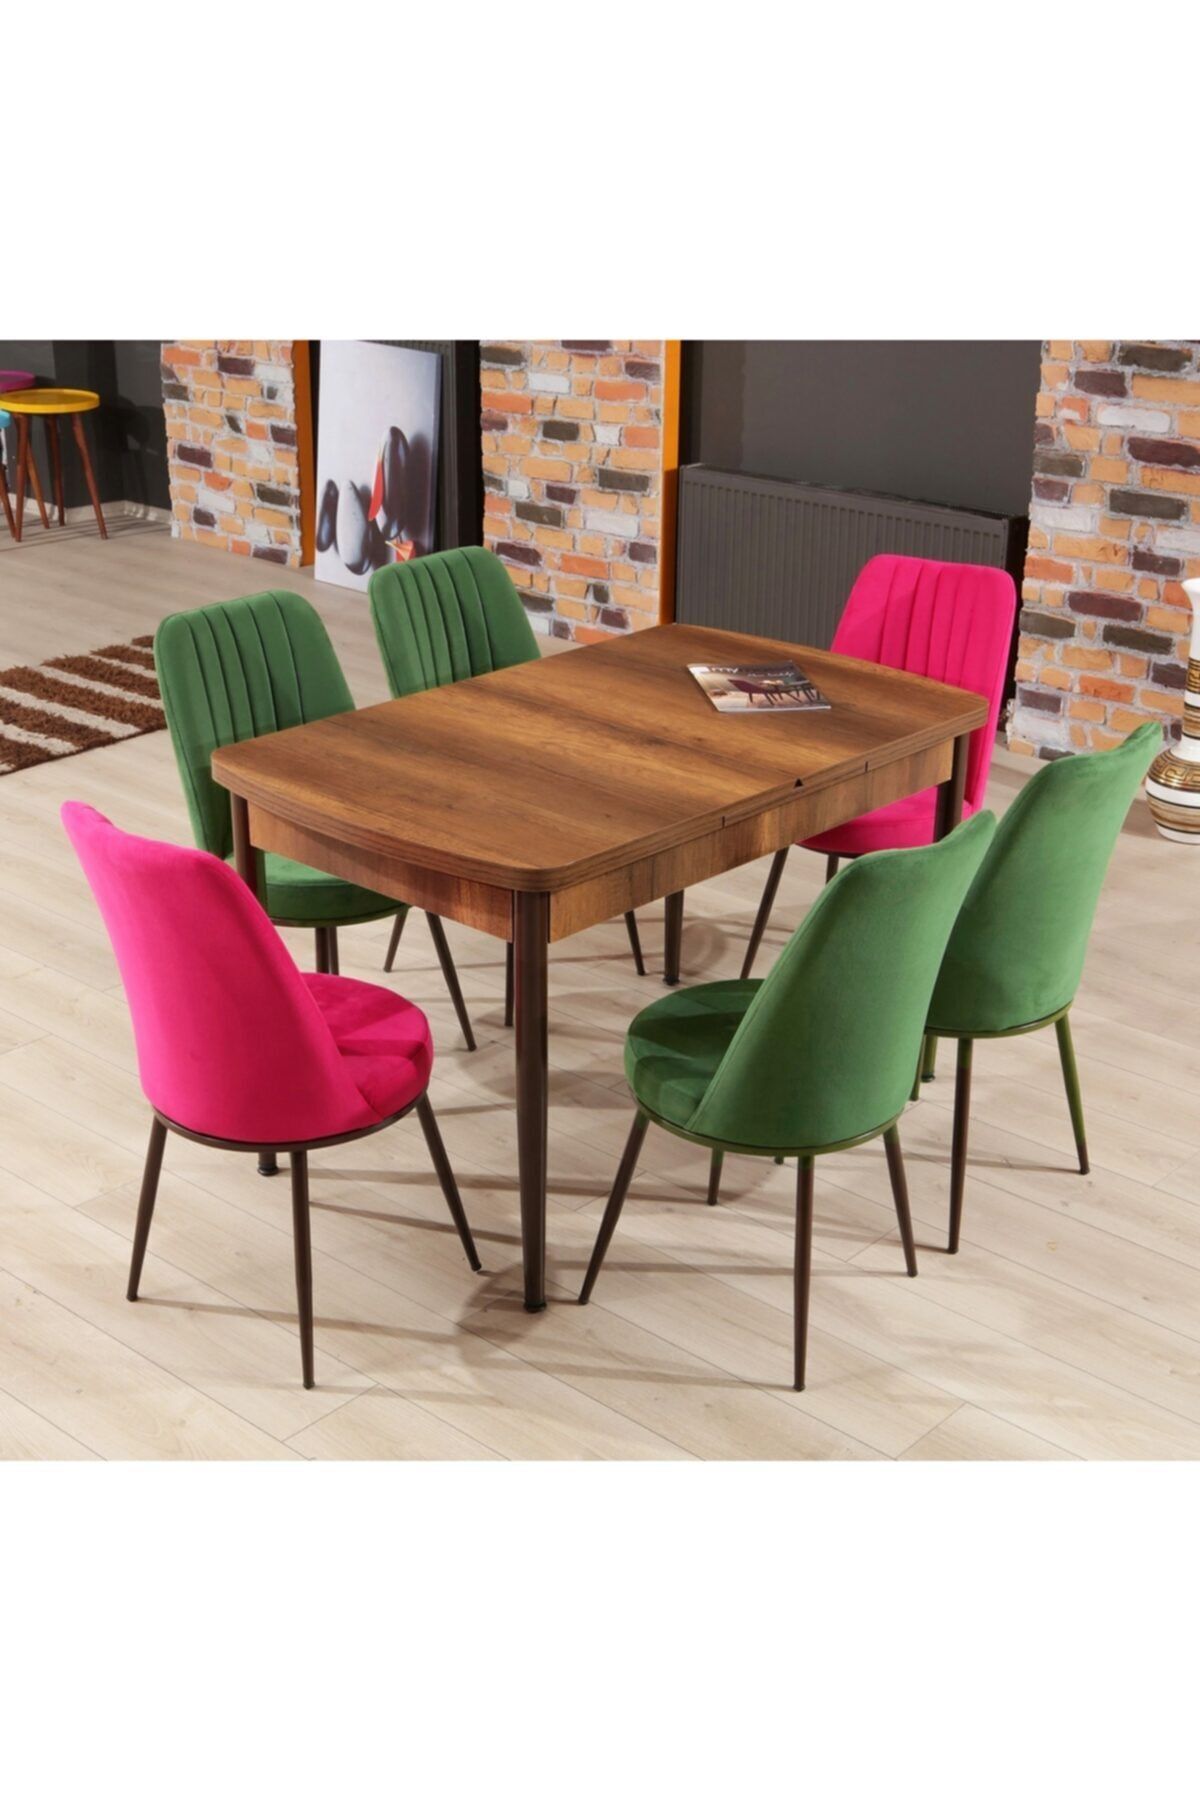 Mymassa Elit Trend Barok Mutfak Masası Ve Gold Sandalye Takımı - 4 Yeşil 2 Fuşya